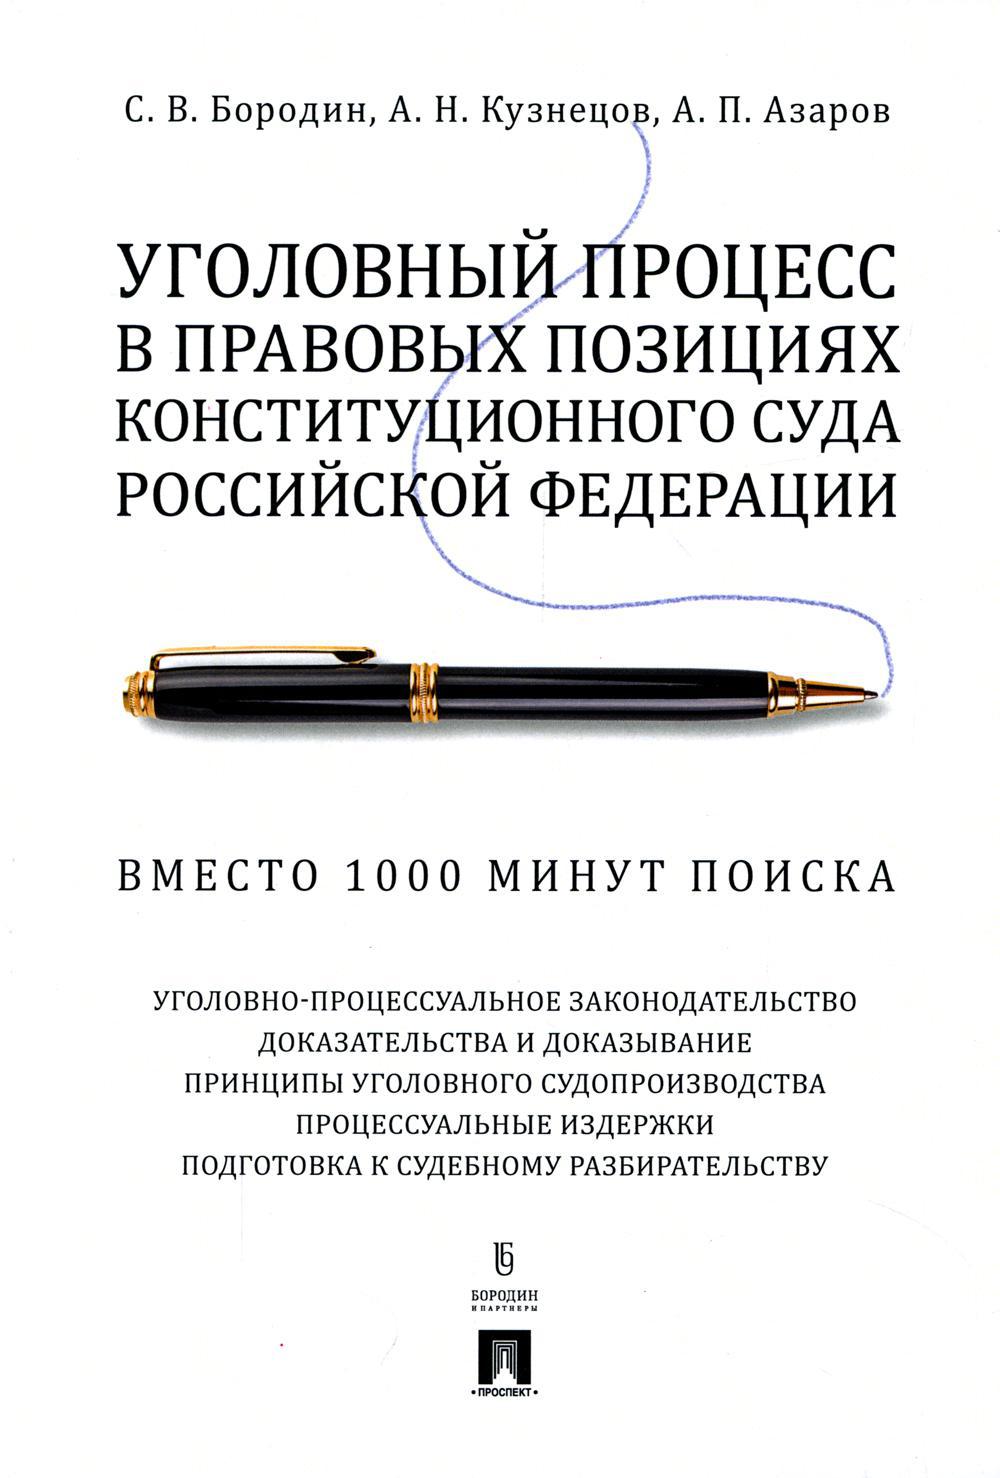 Уголовный процесс в правовых позициях Конституционного Суда РФ. Вместо 1000 минут поиска